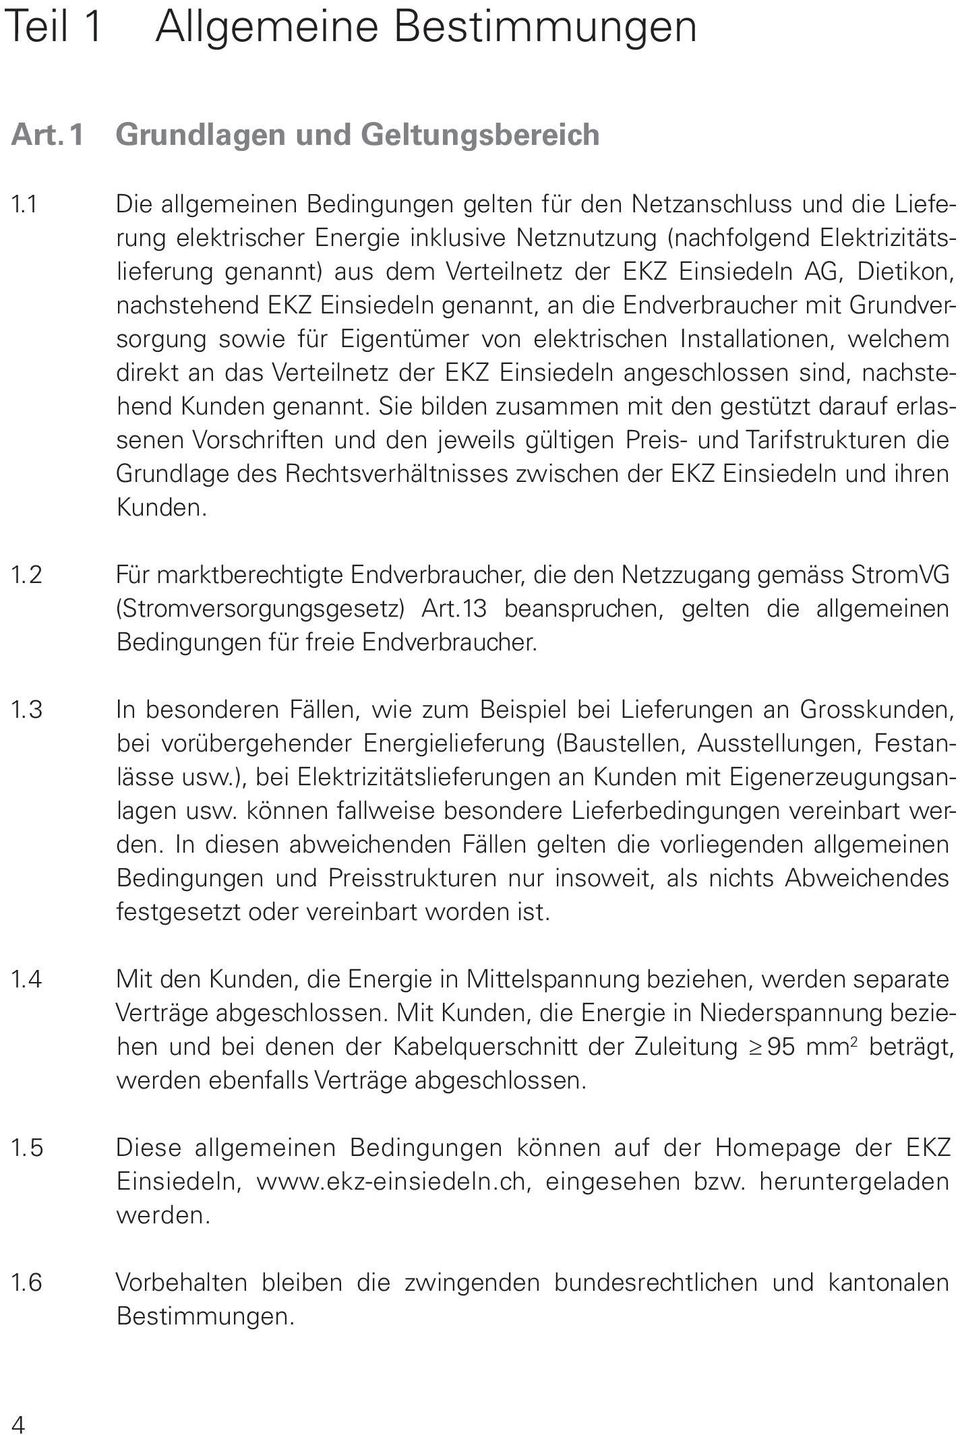 Einsiedeln AG, Dietikon, nachstehend EKZ Einsiedeln genannt, an die Endverbraucher mit Grundversorgung sowie für Eigentümer von elektrischen Installationen, welchem direkt an das Verteilnetz der EKZ